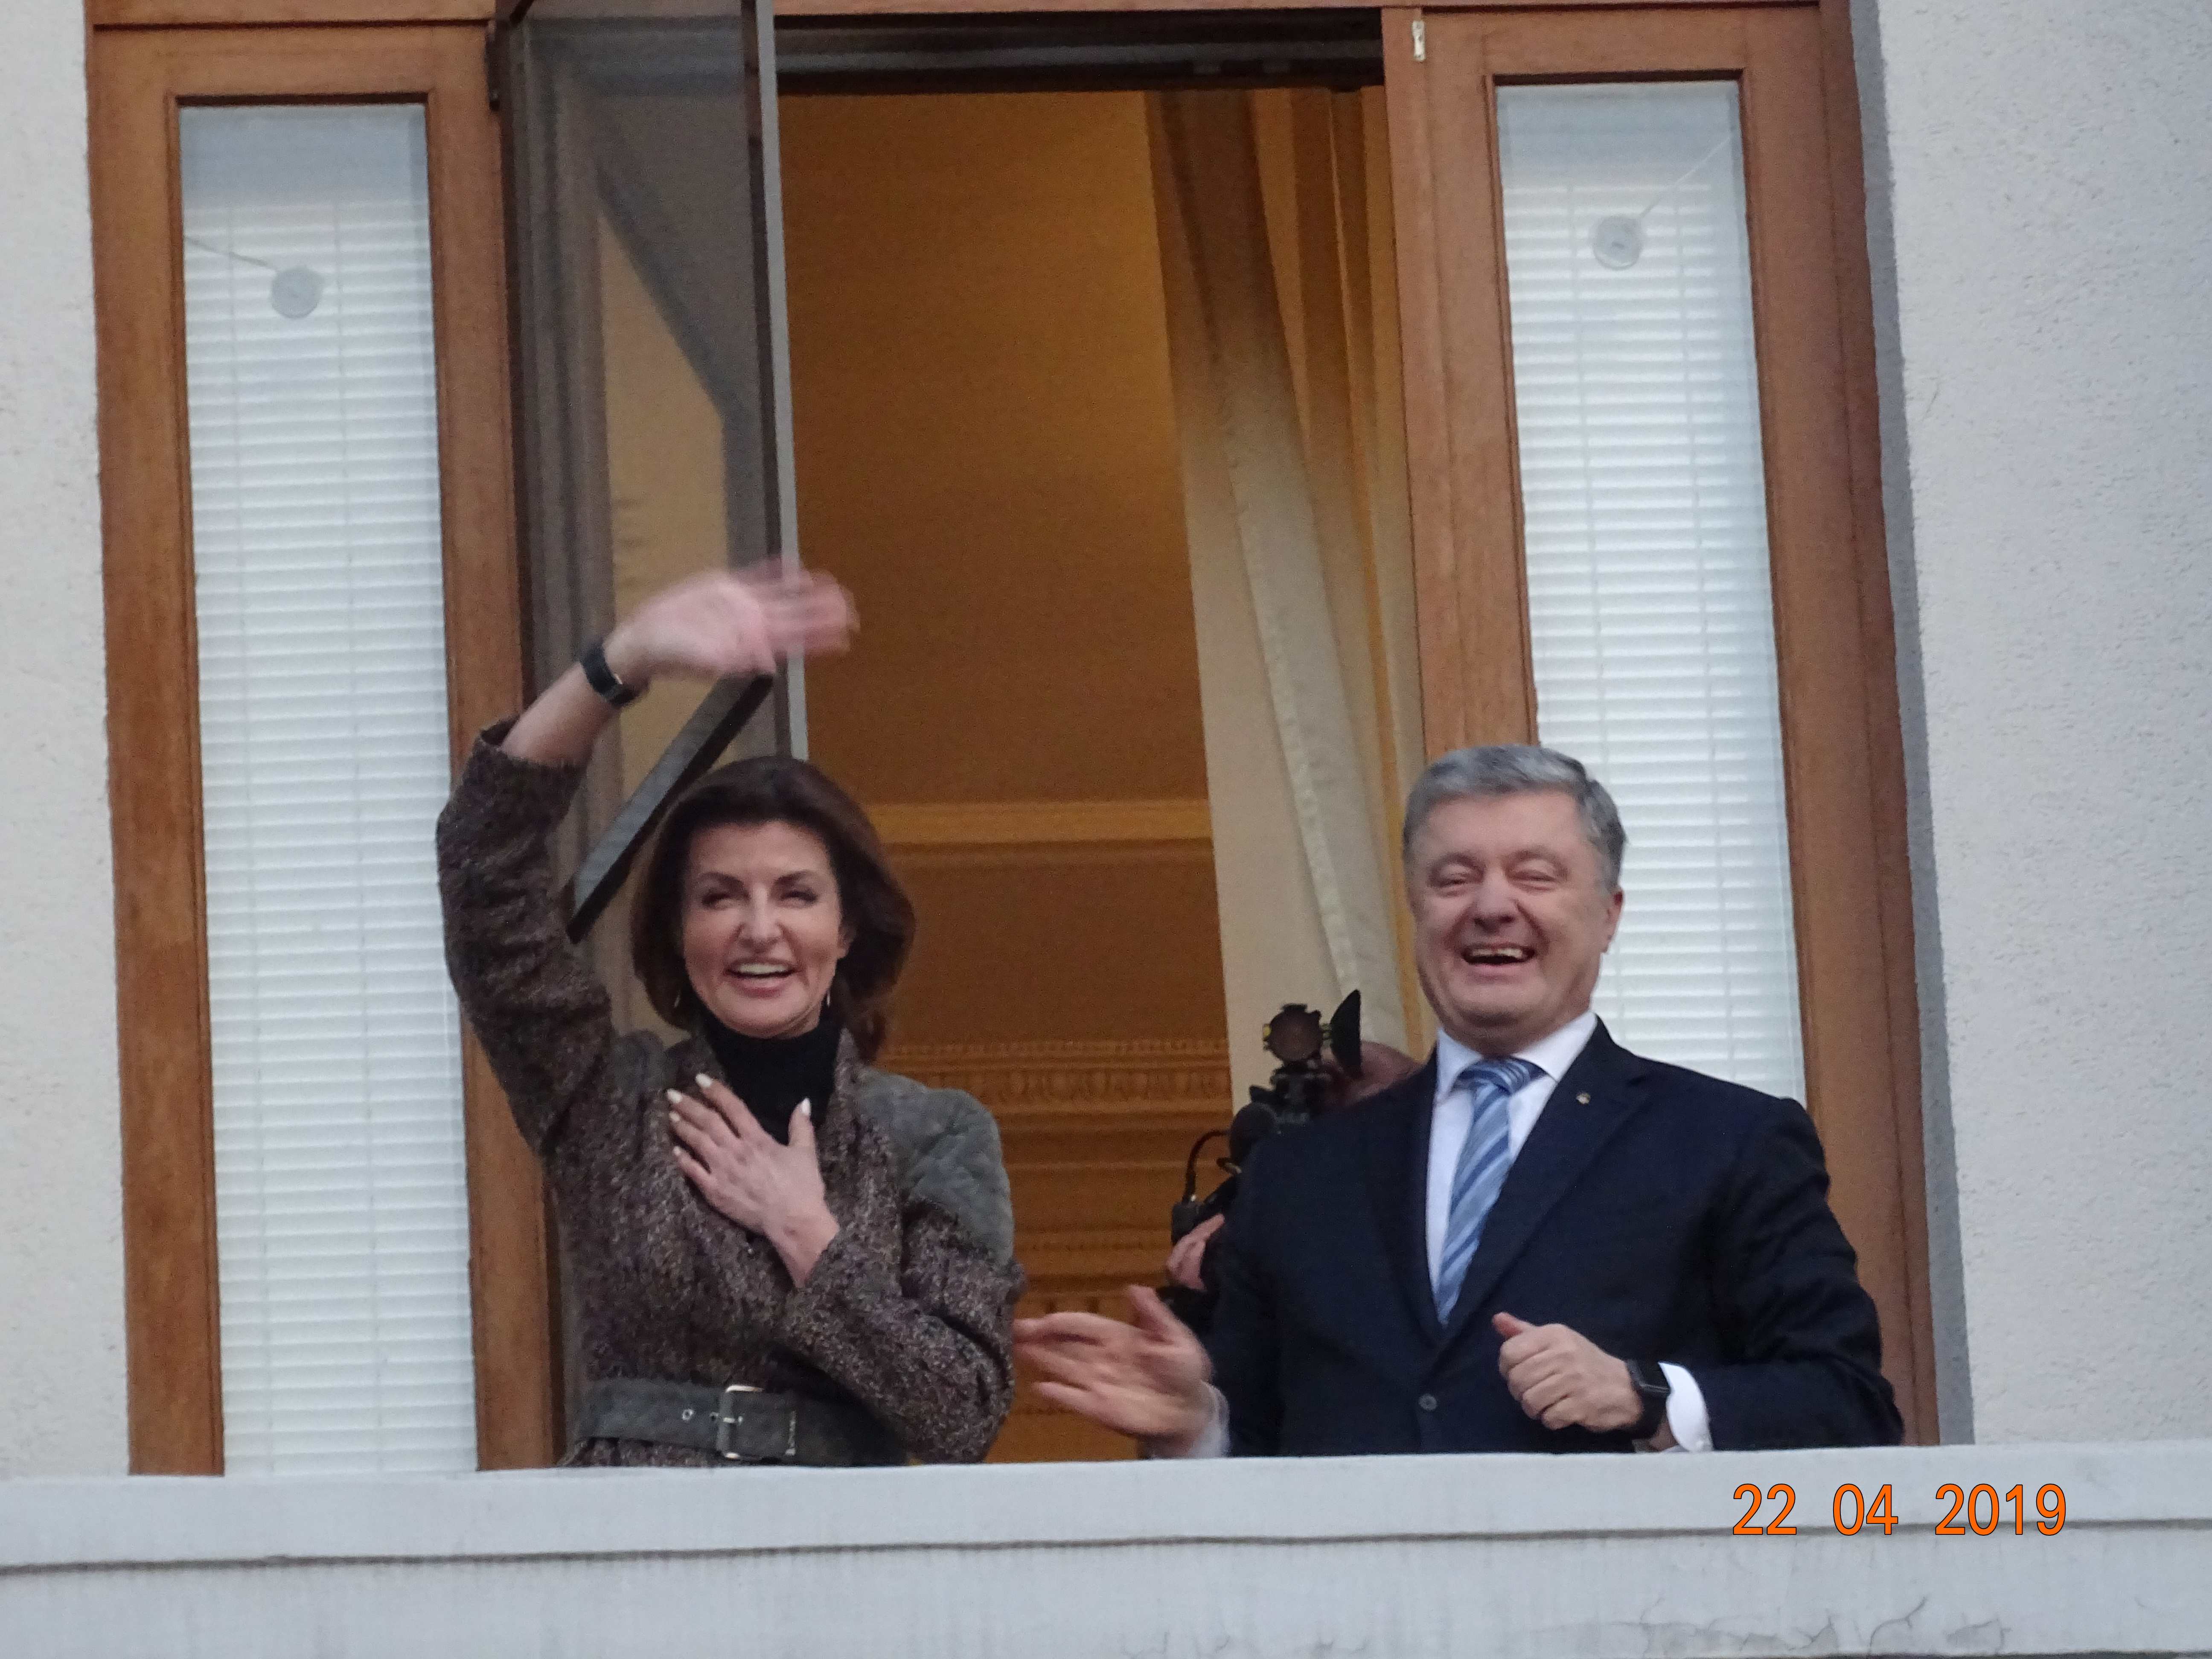 Thanks-to-President-Poroshenko - DSC02902-Thanks-to-President-Poroshenko.jpg